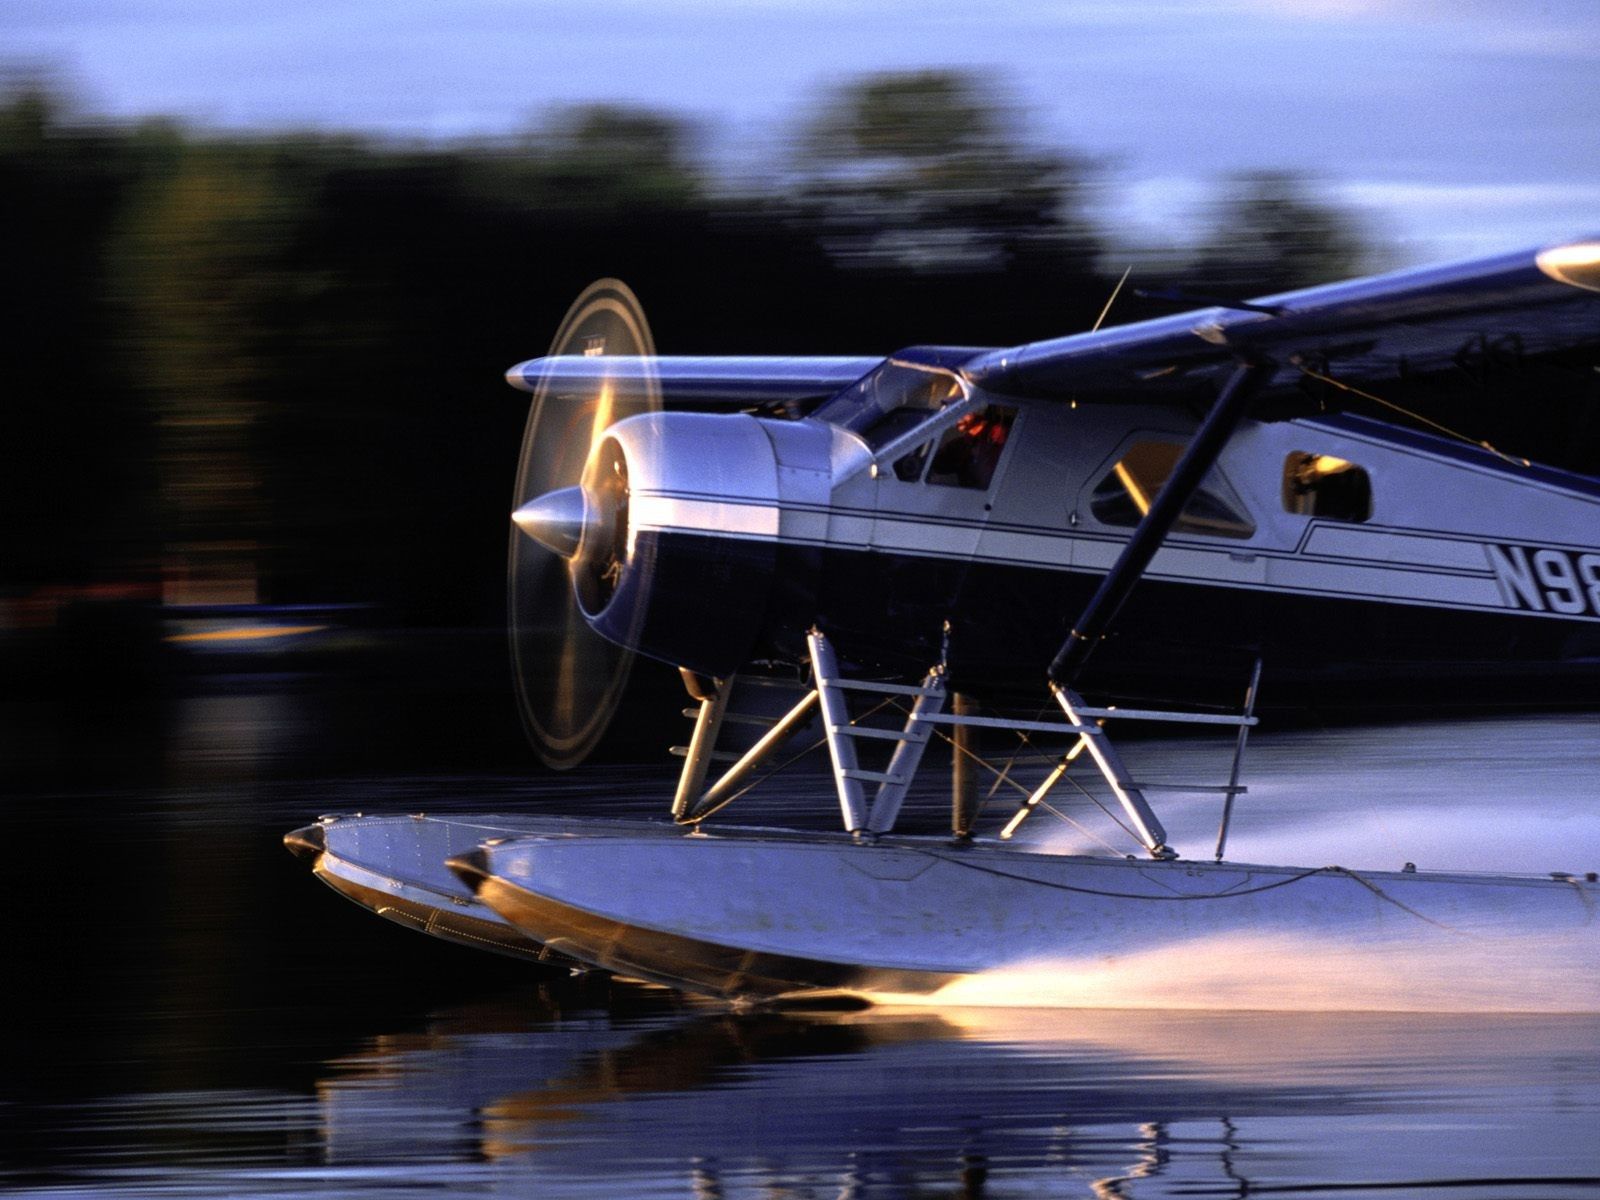 Alaska wallpaper / Wallbase.cc. Airplane photography, Aircraft, Flying boat